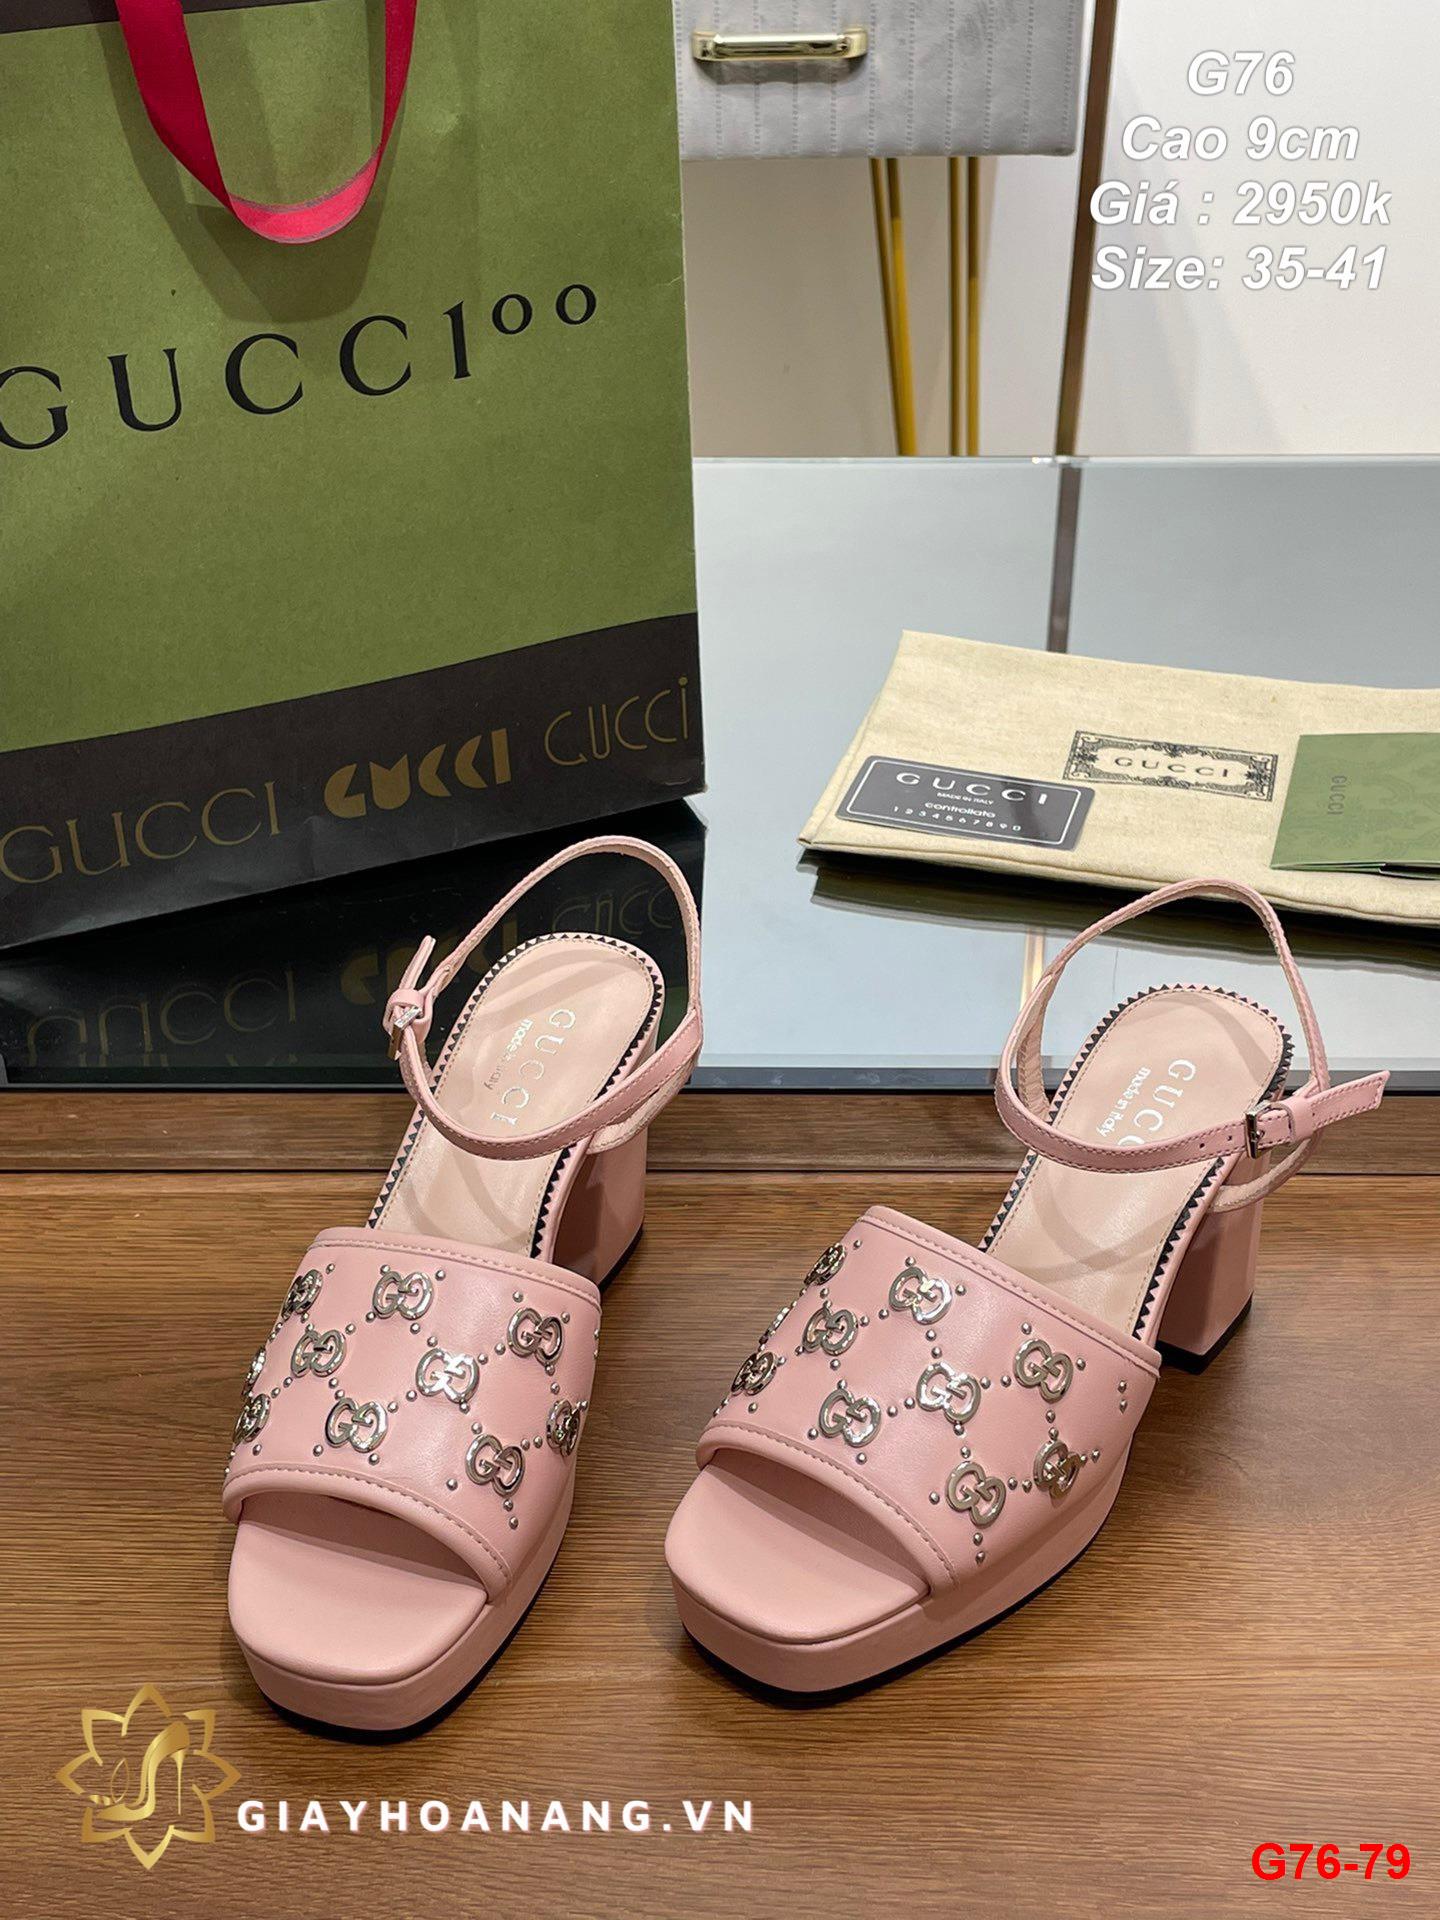 G76-79 Gucci sandal cao 9cm siêu cấp